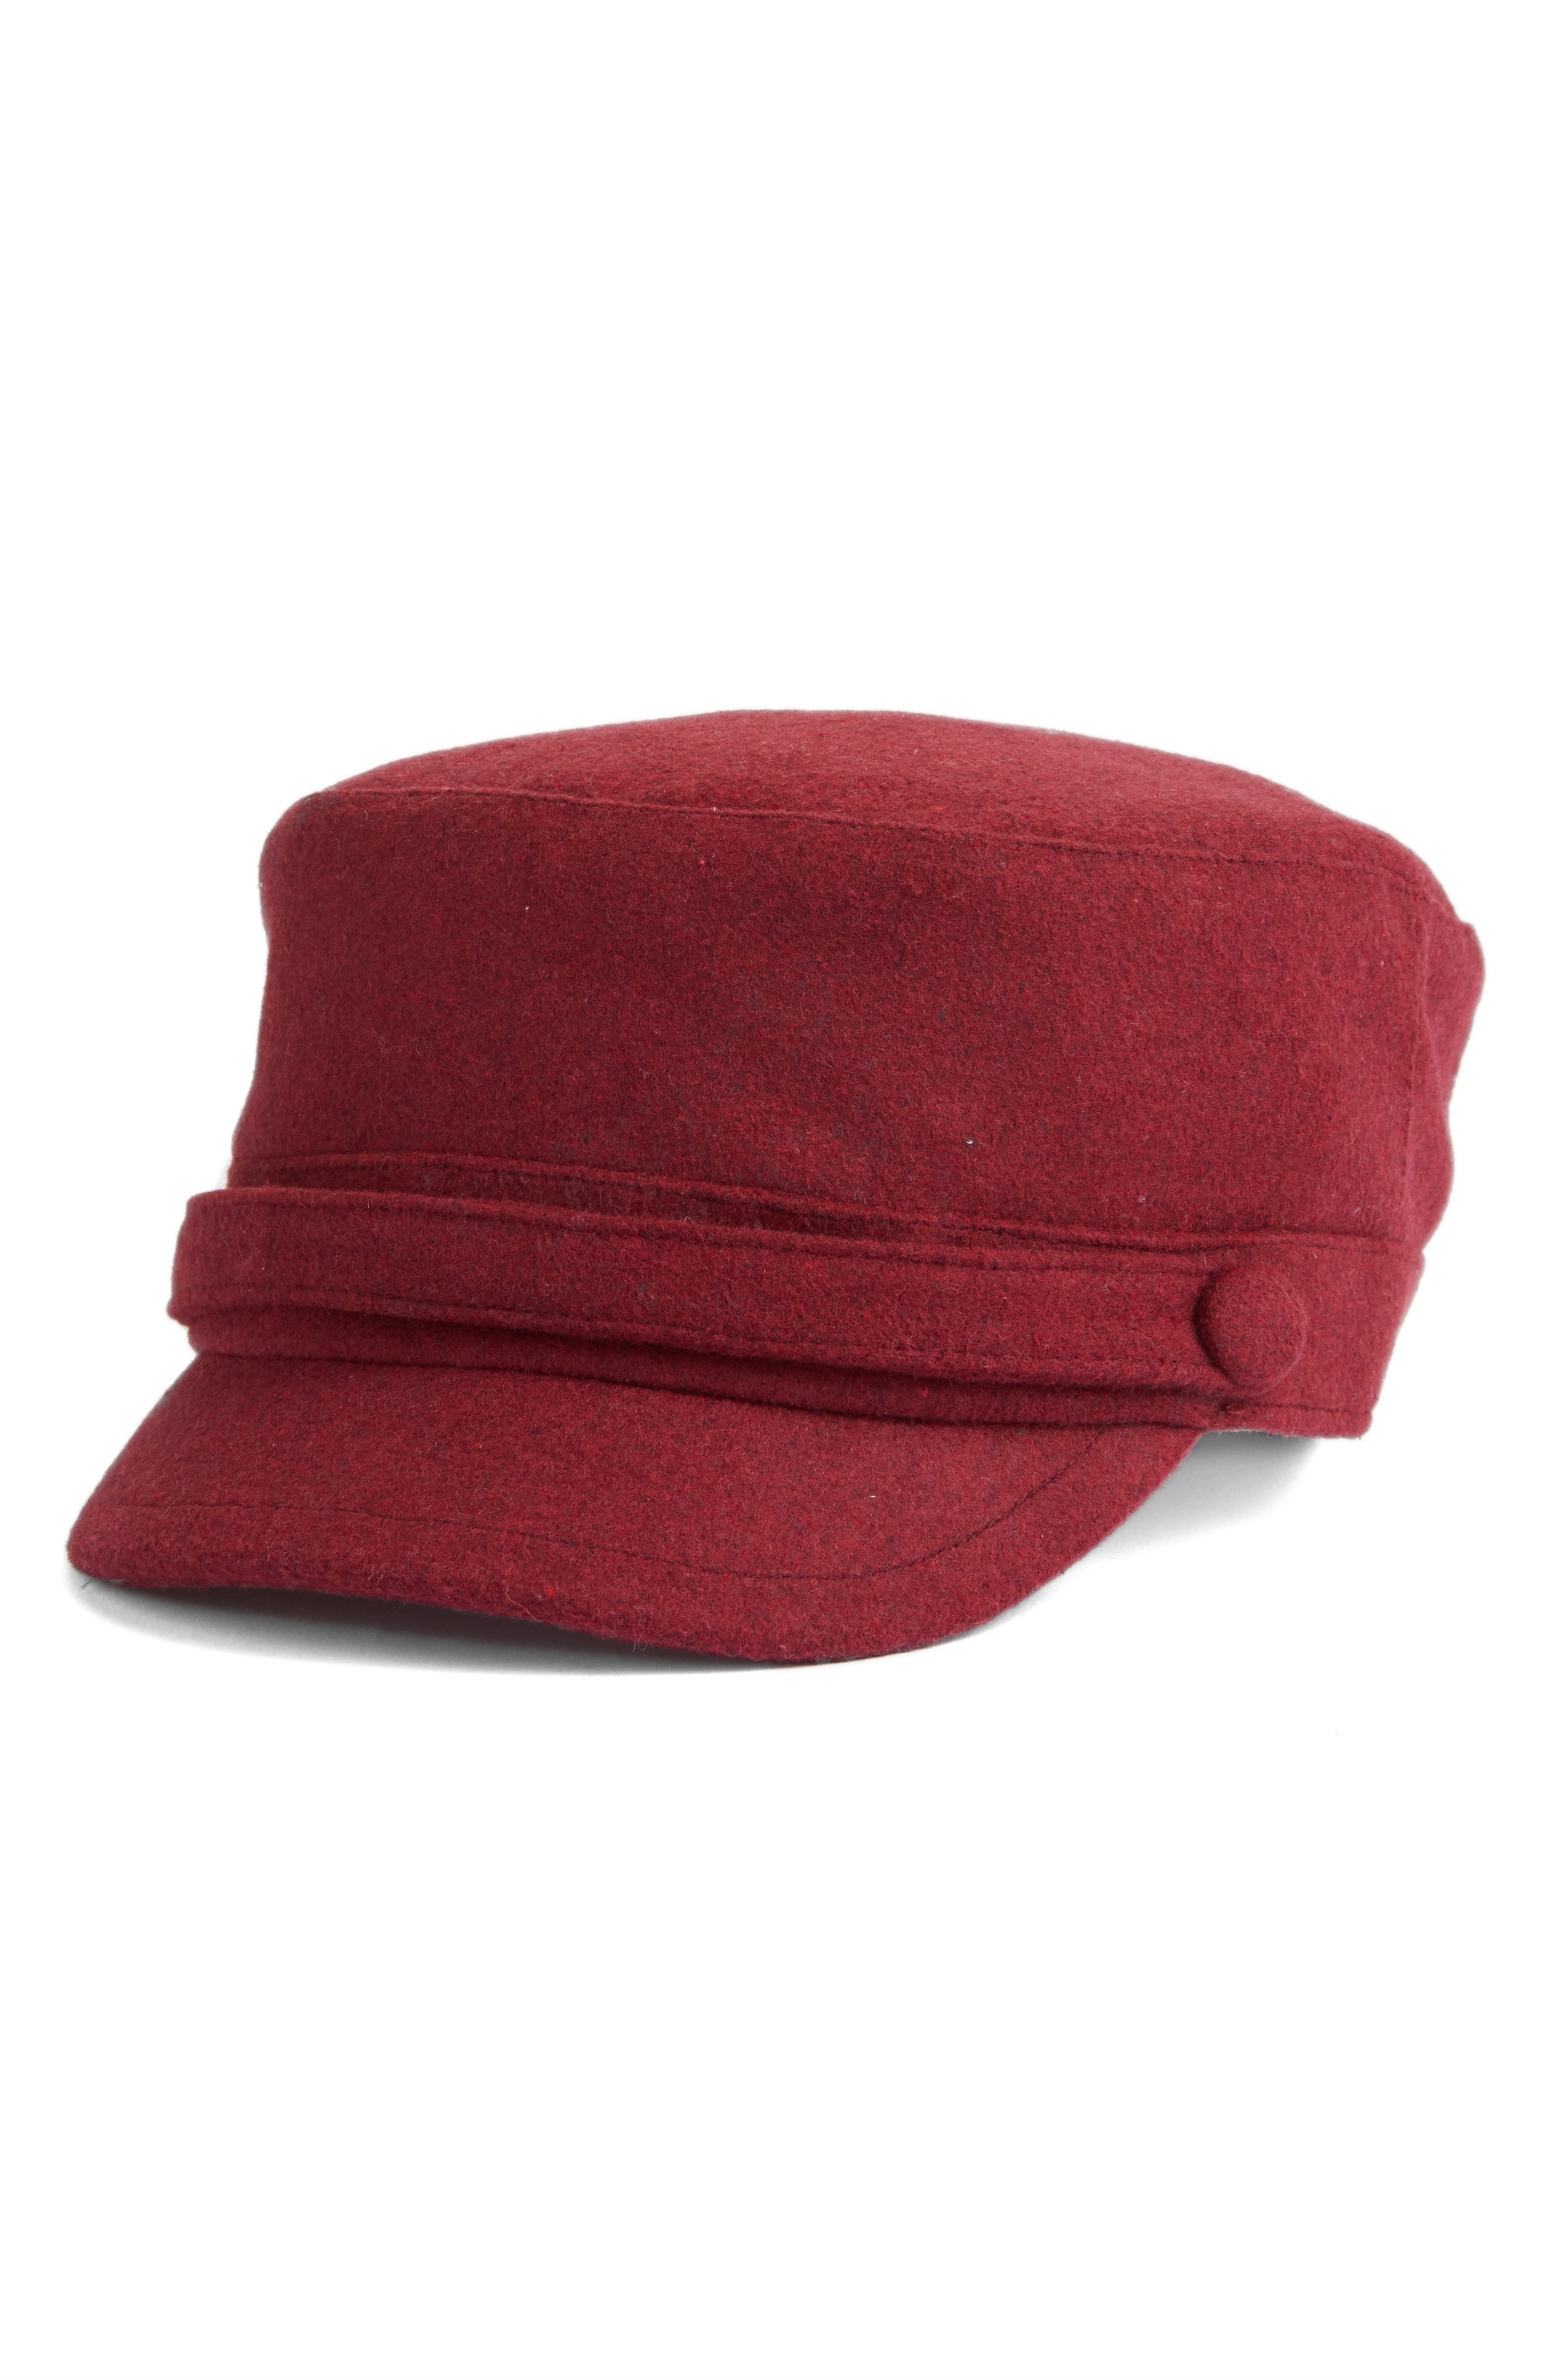 San Diego Hat Cadet Cap